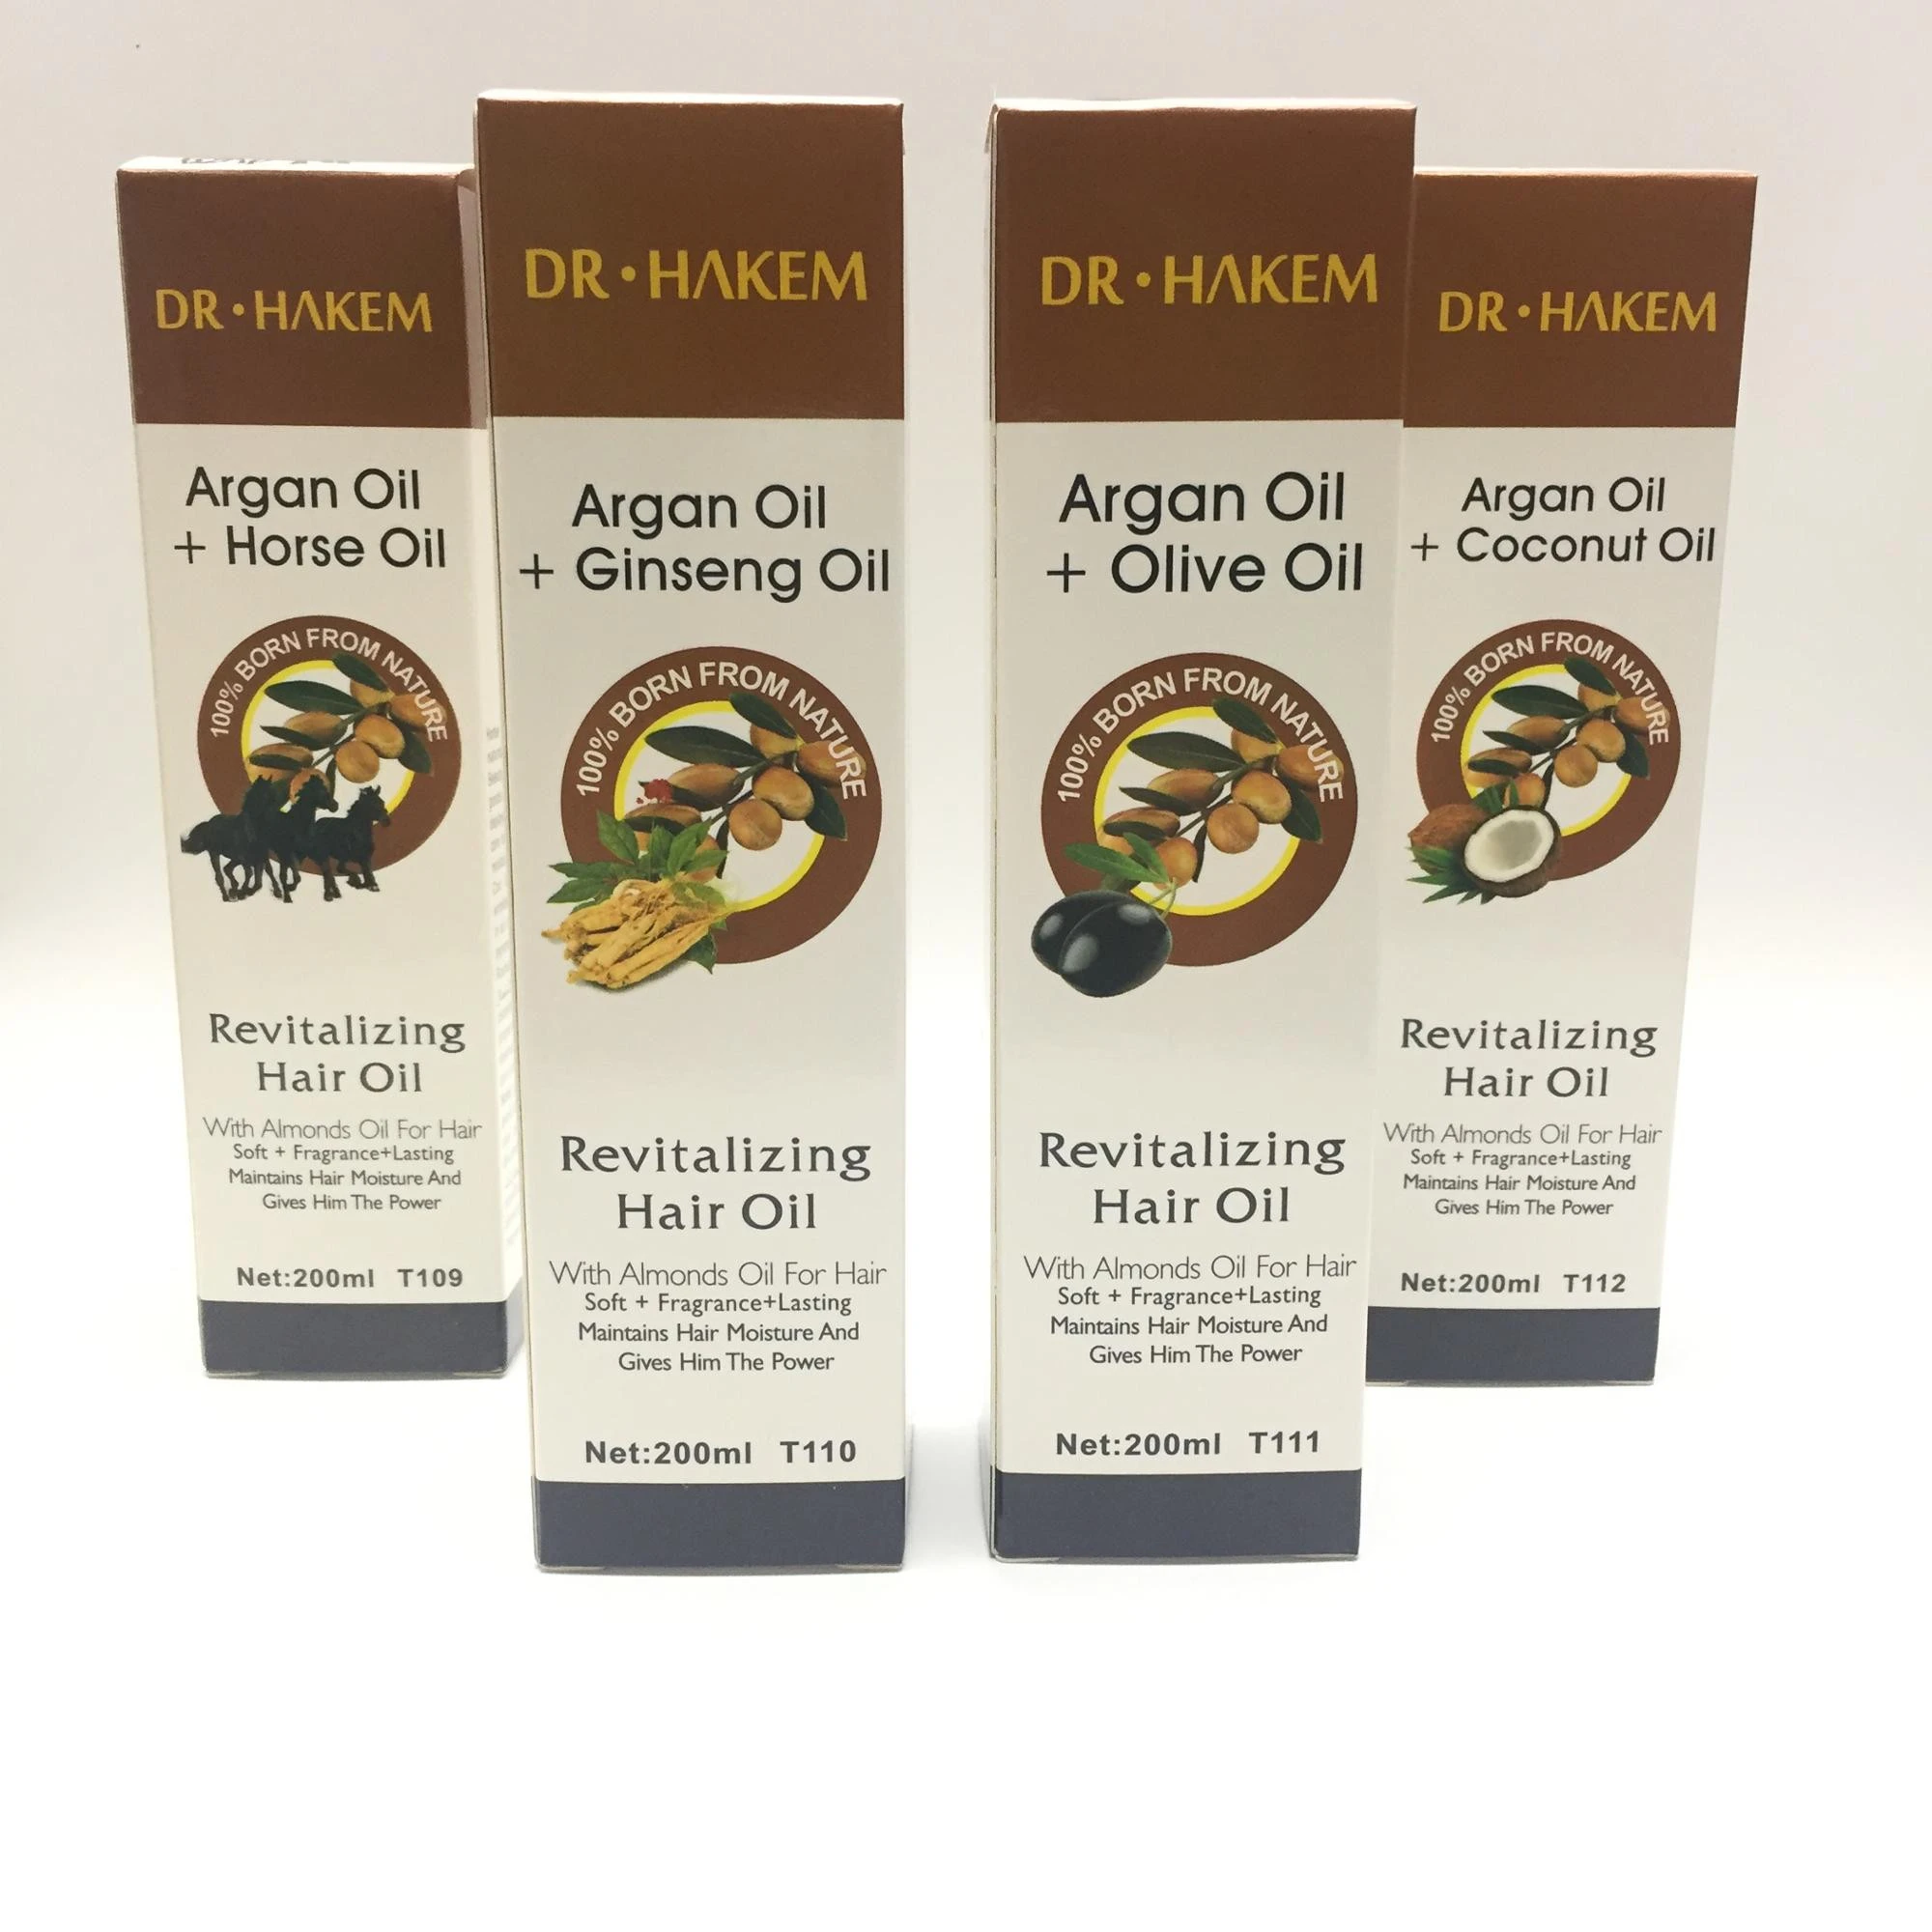 DR.HAKEM Repair Lasting Health Natural Herbal Care Oil Hair Serum care Hair Oil Essence